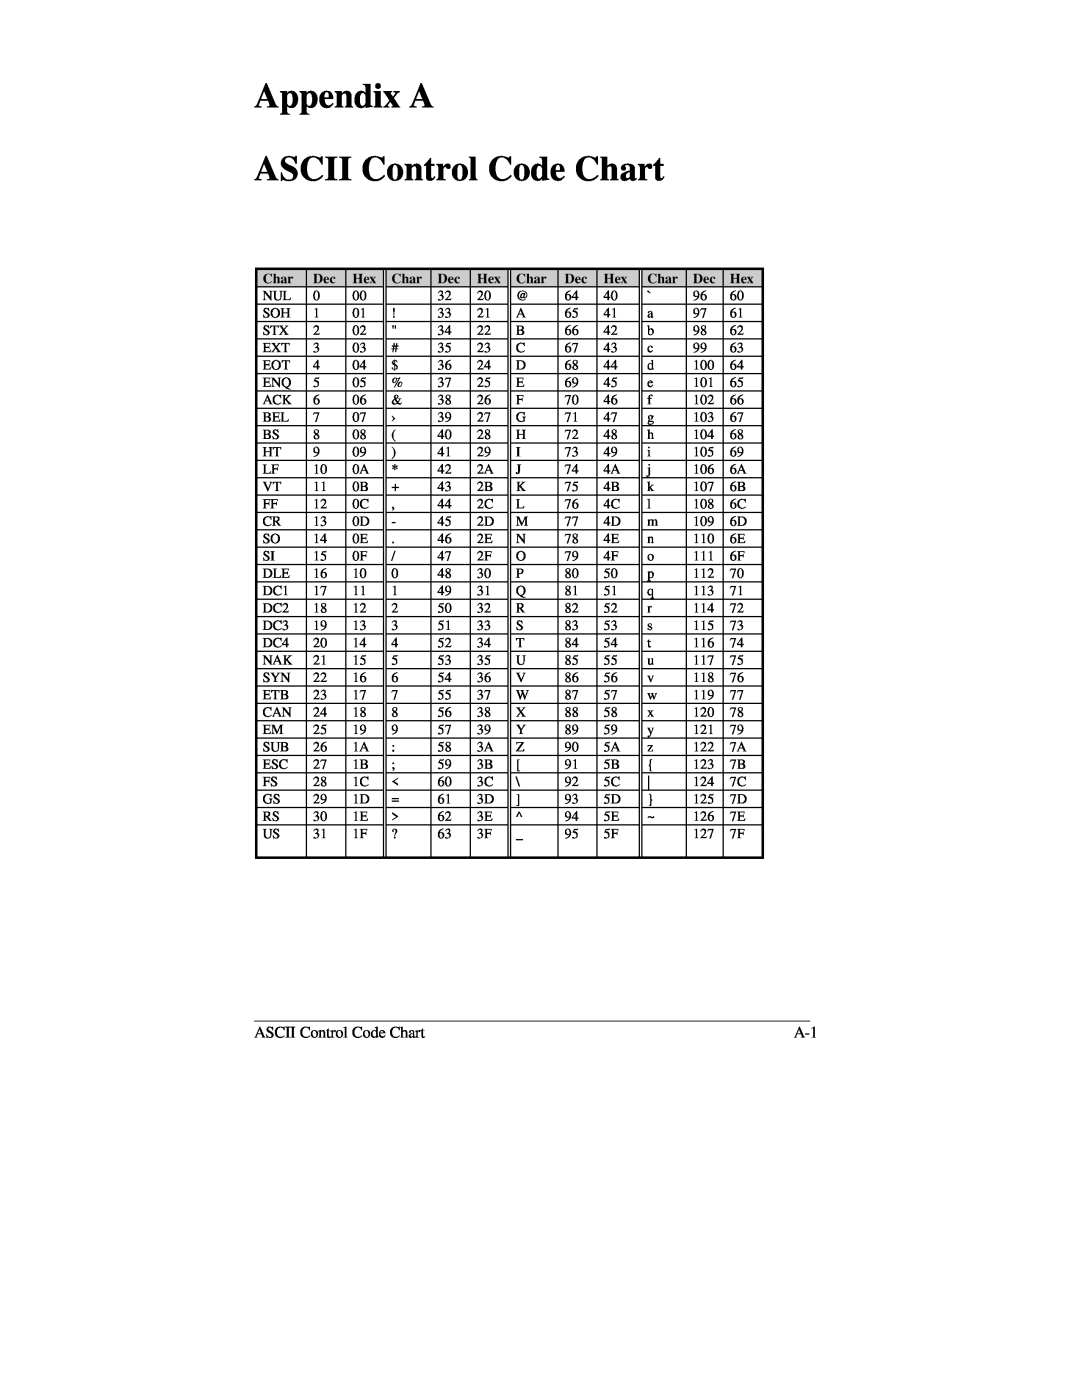 Brady 2034, 2024 manual Appendix A ASCII Control Code Chart 